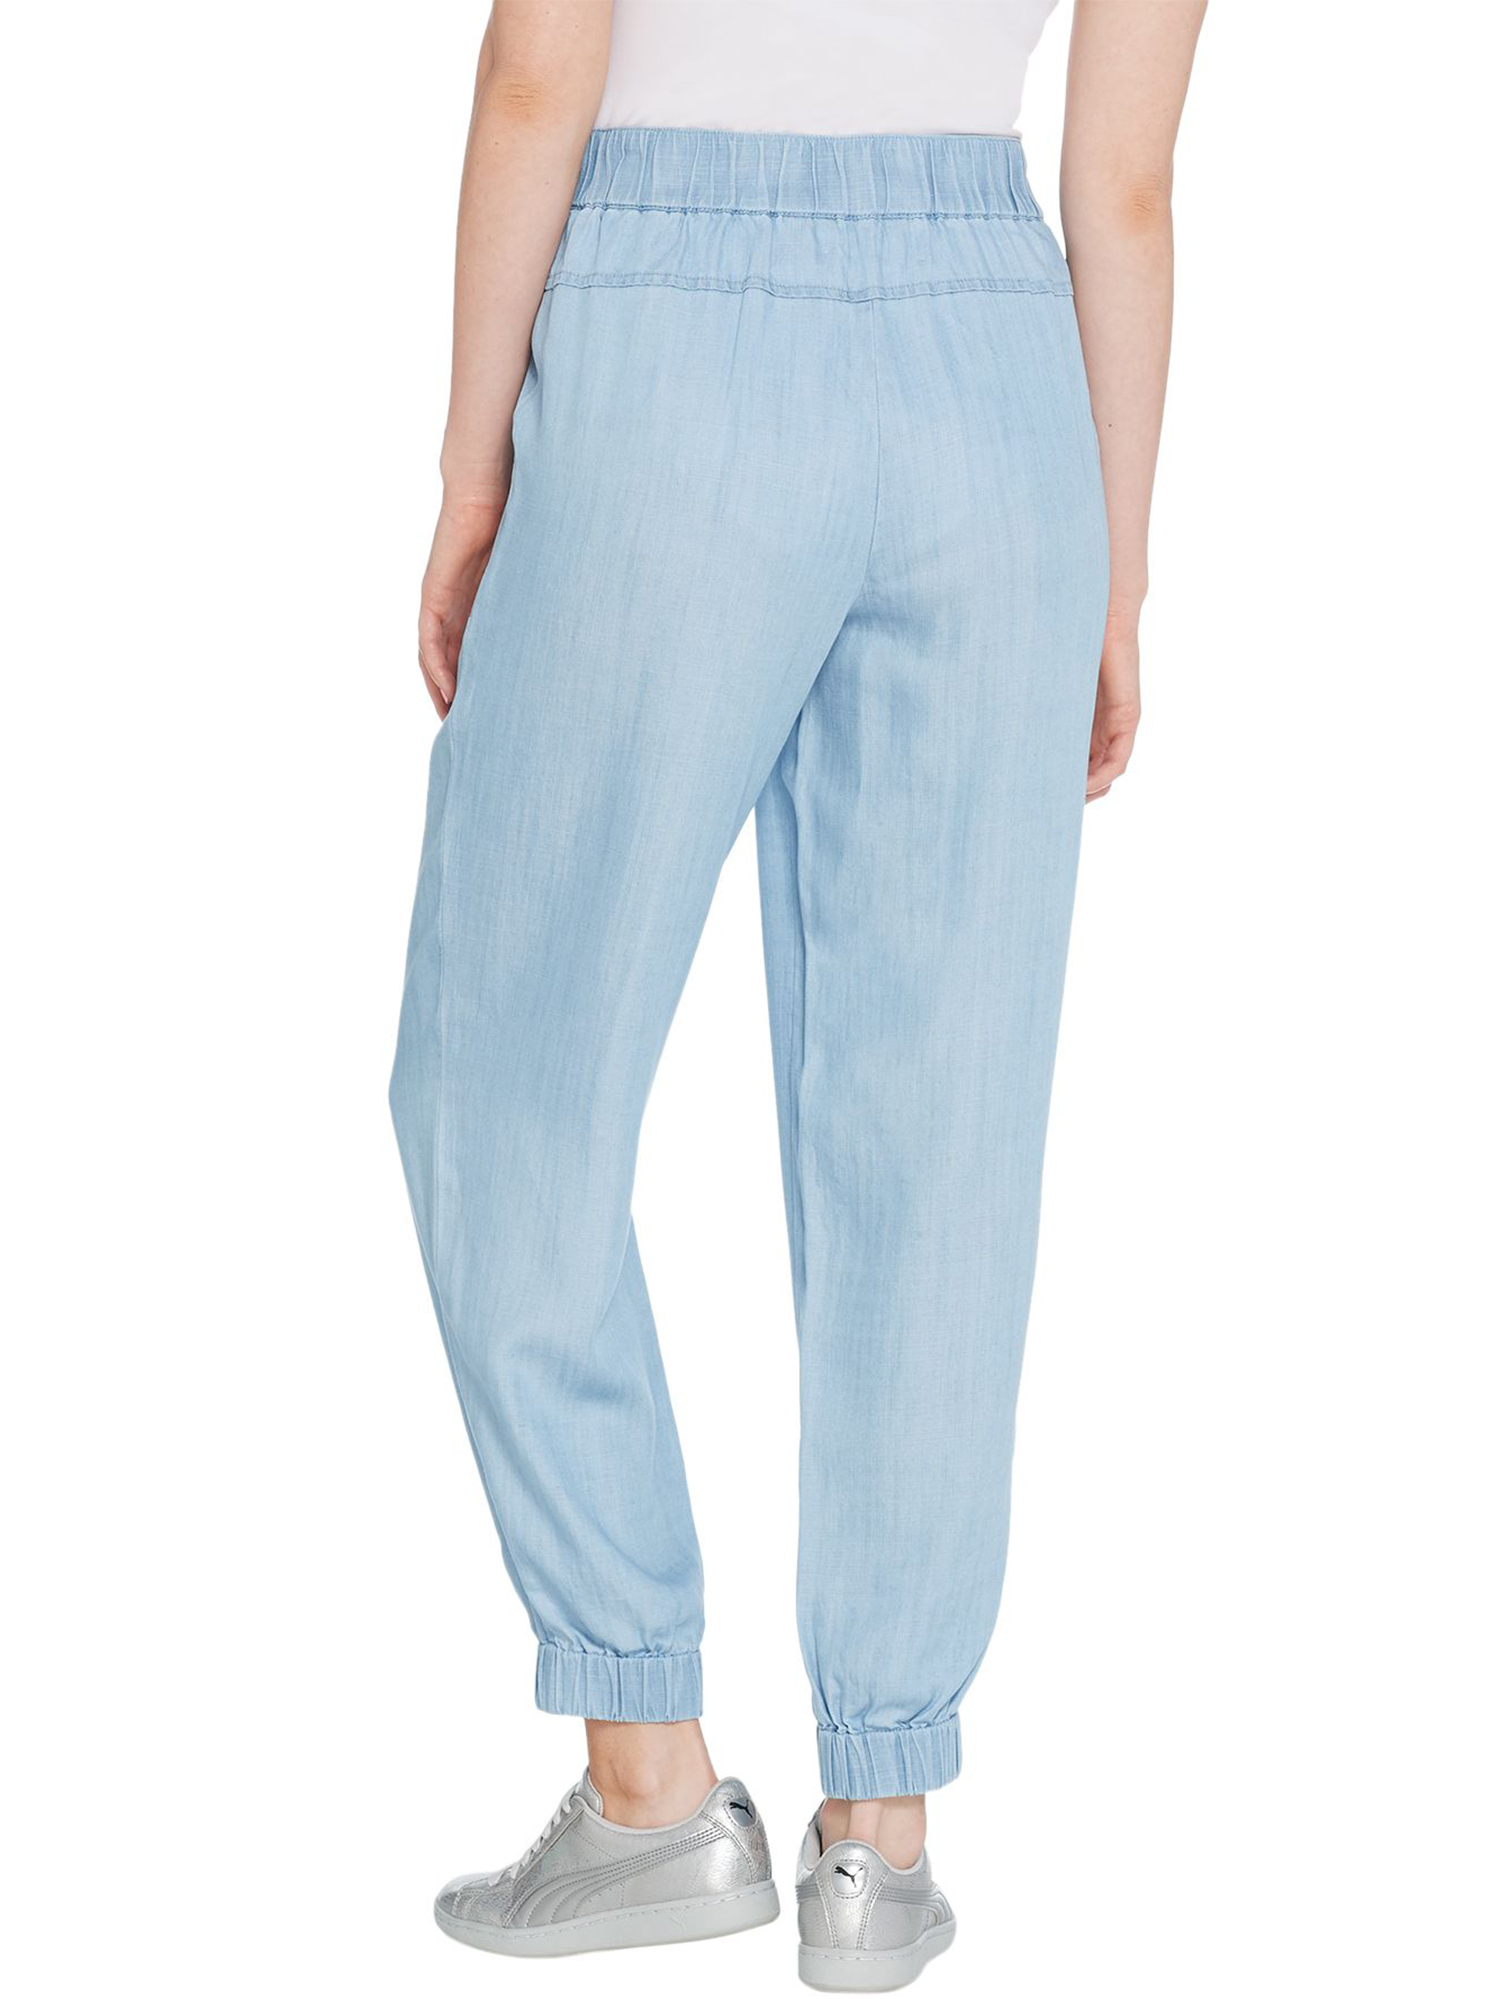 LISA RINNA Size 6 Lyocell Jogger Pants DARK WASH – NYC Moda Boutique